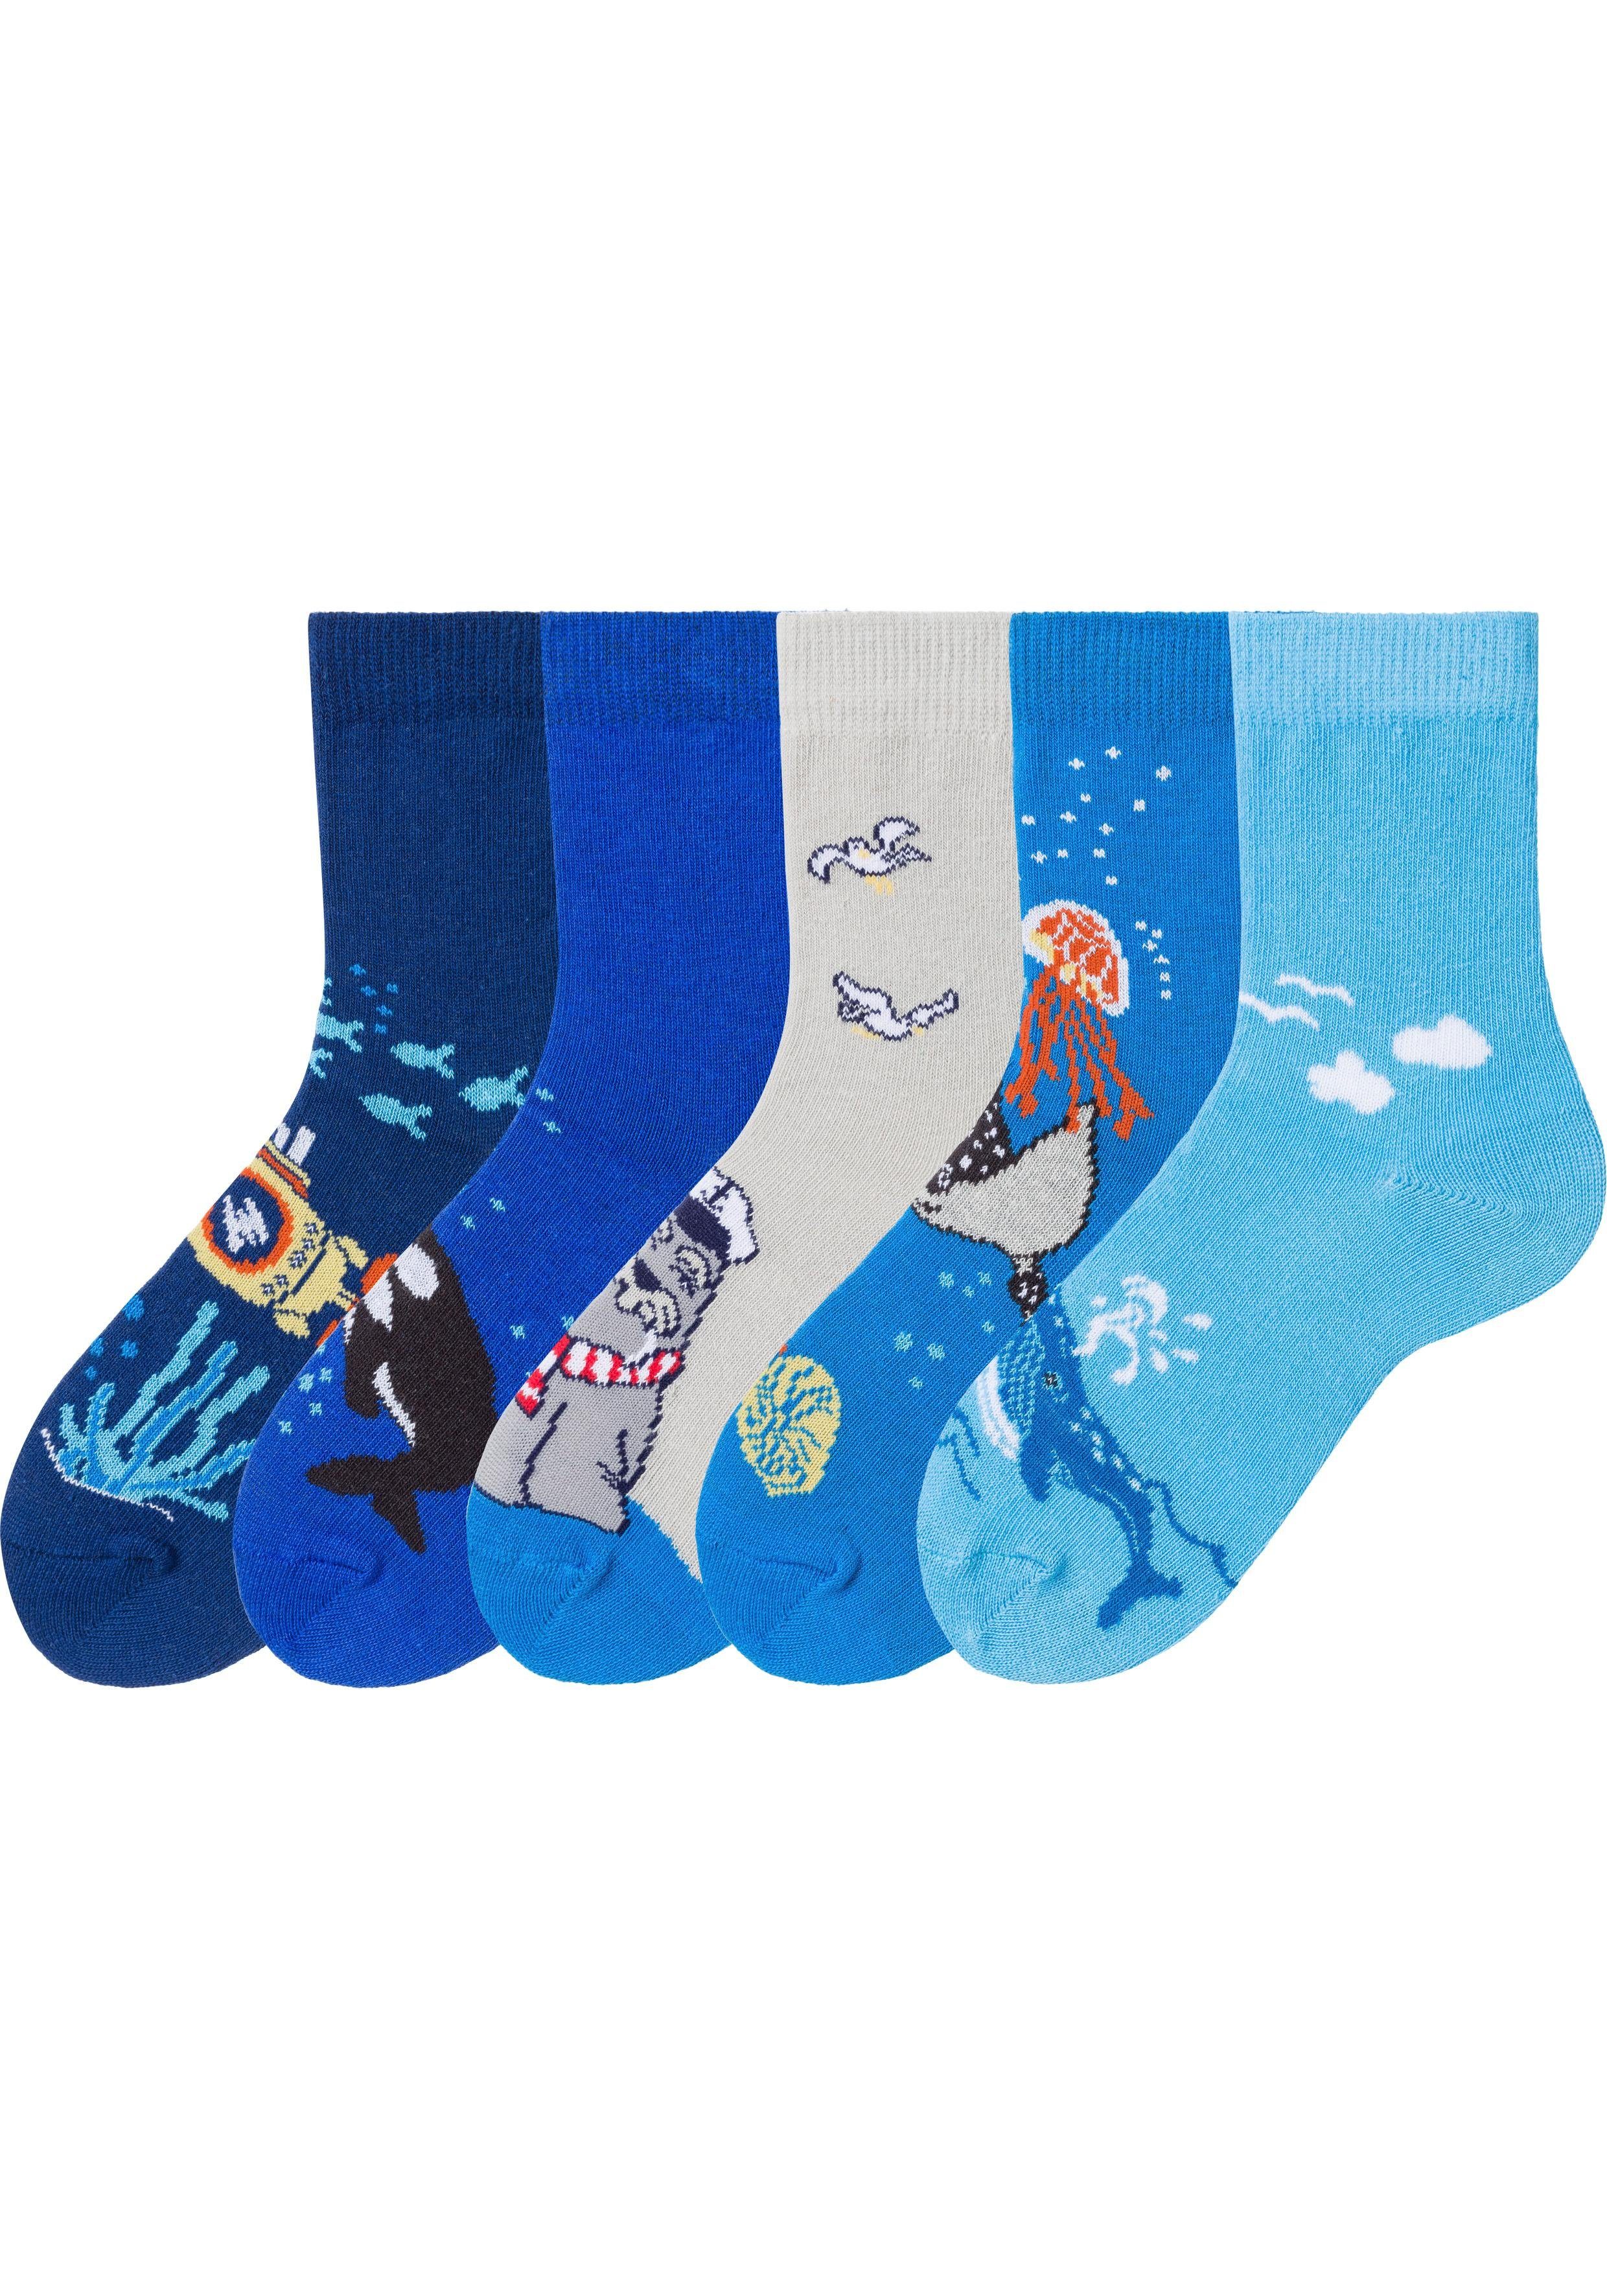 Arizona Socken (5-Paar) mit Meeresmotiven | Lange Socken